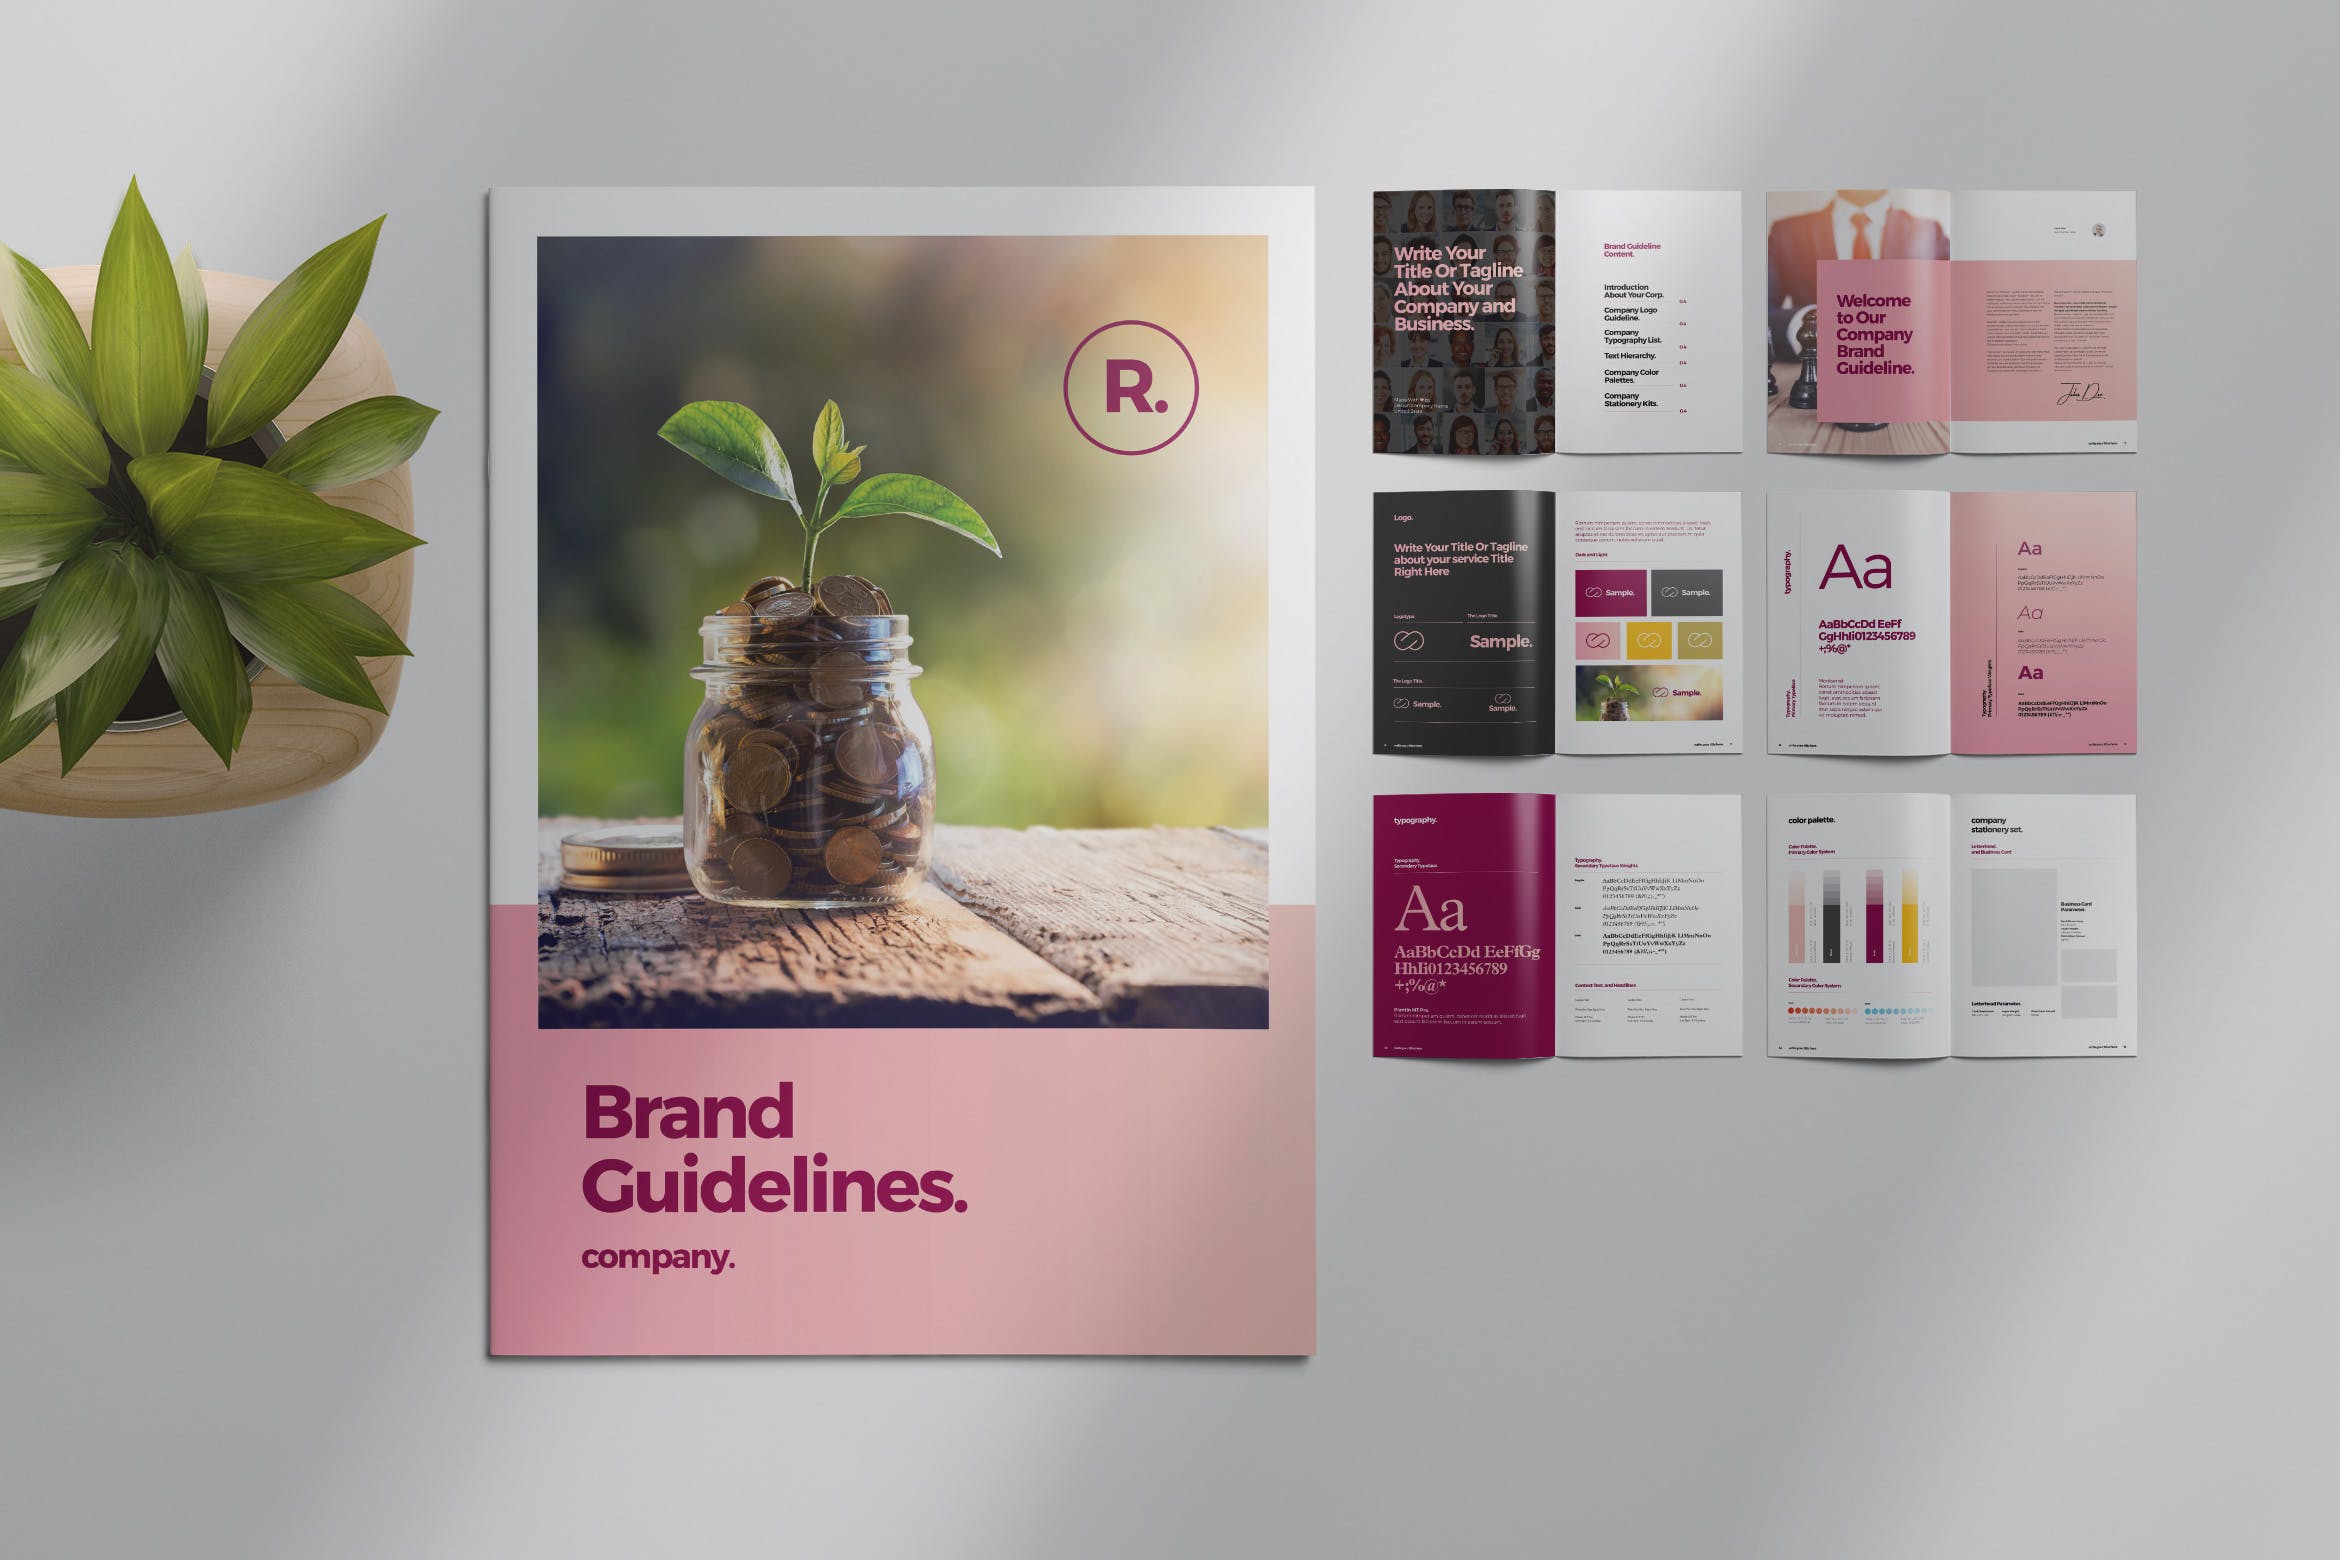 品牌指南/品牌规范手册排版设计模板 Brand Style Guide Layout插图